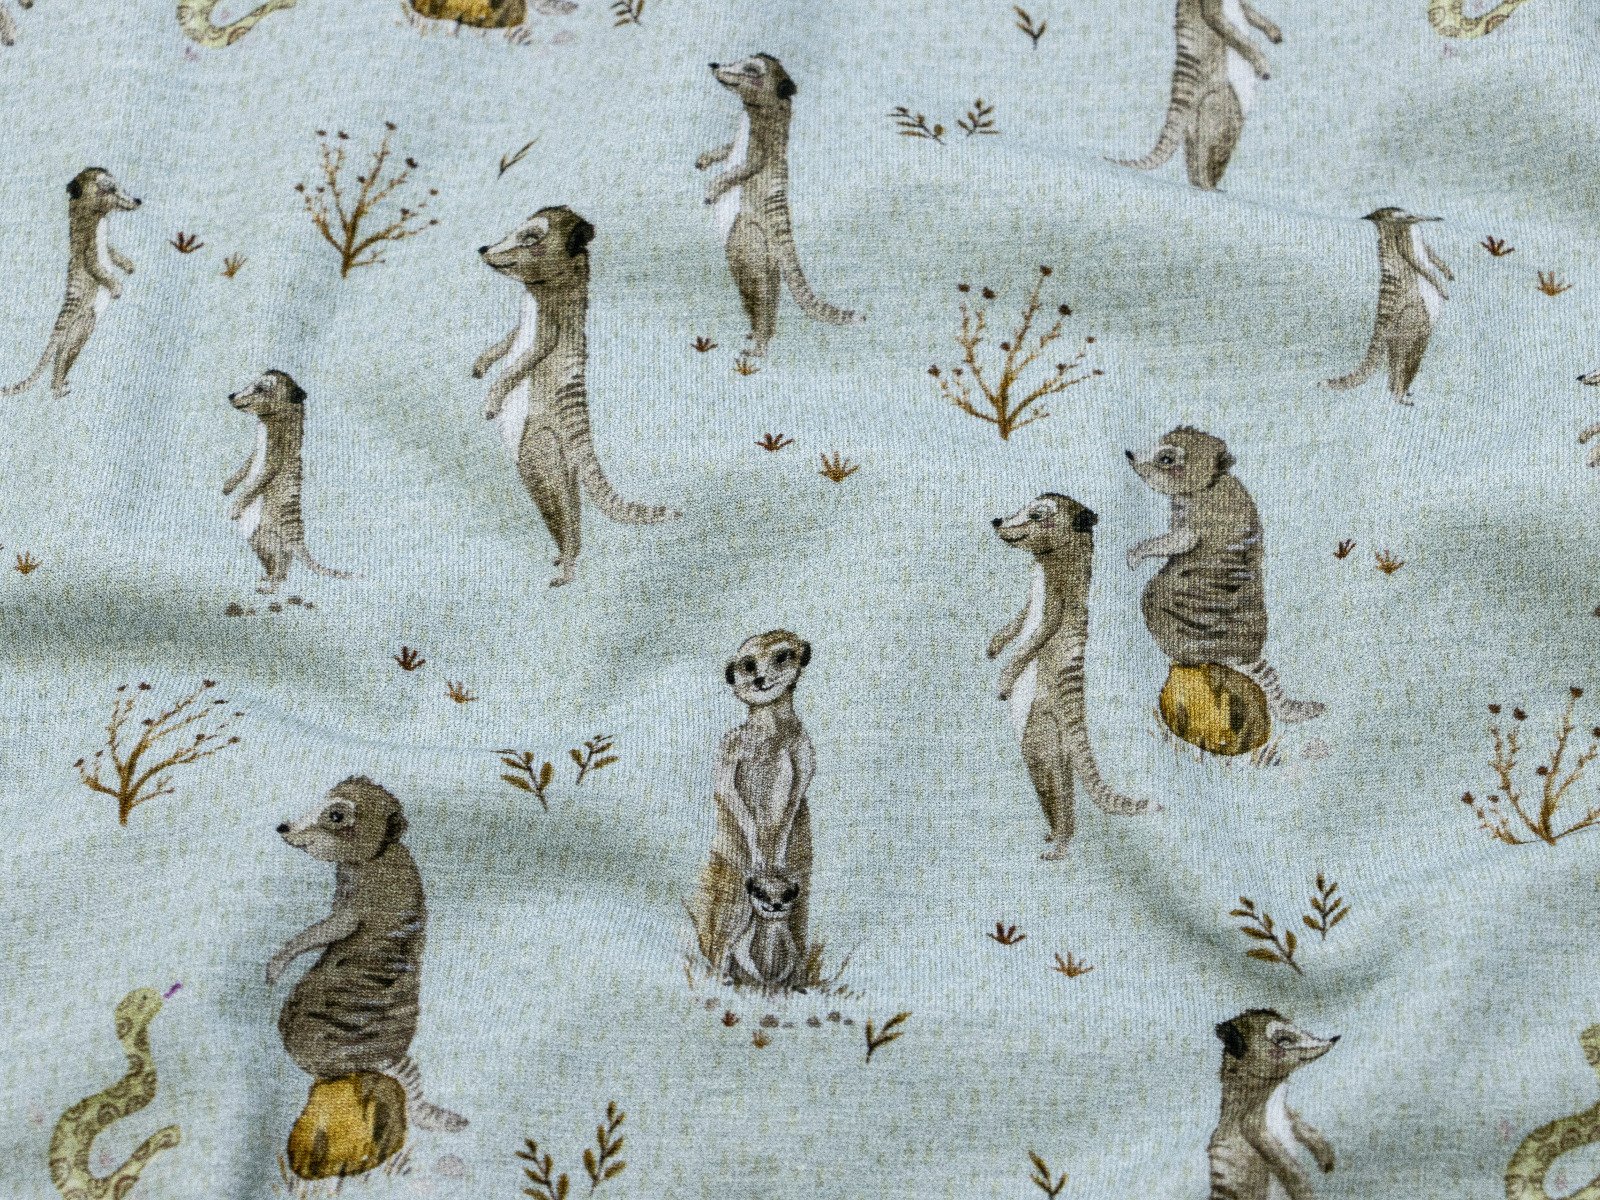 Jersey Swafing Animals by Christiane Zielinski - verrückte Erdmännchen - graublau